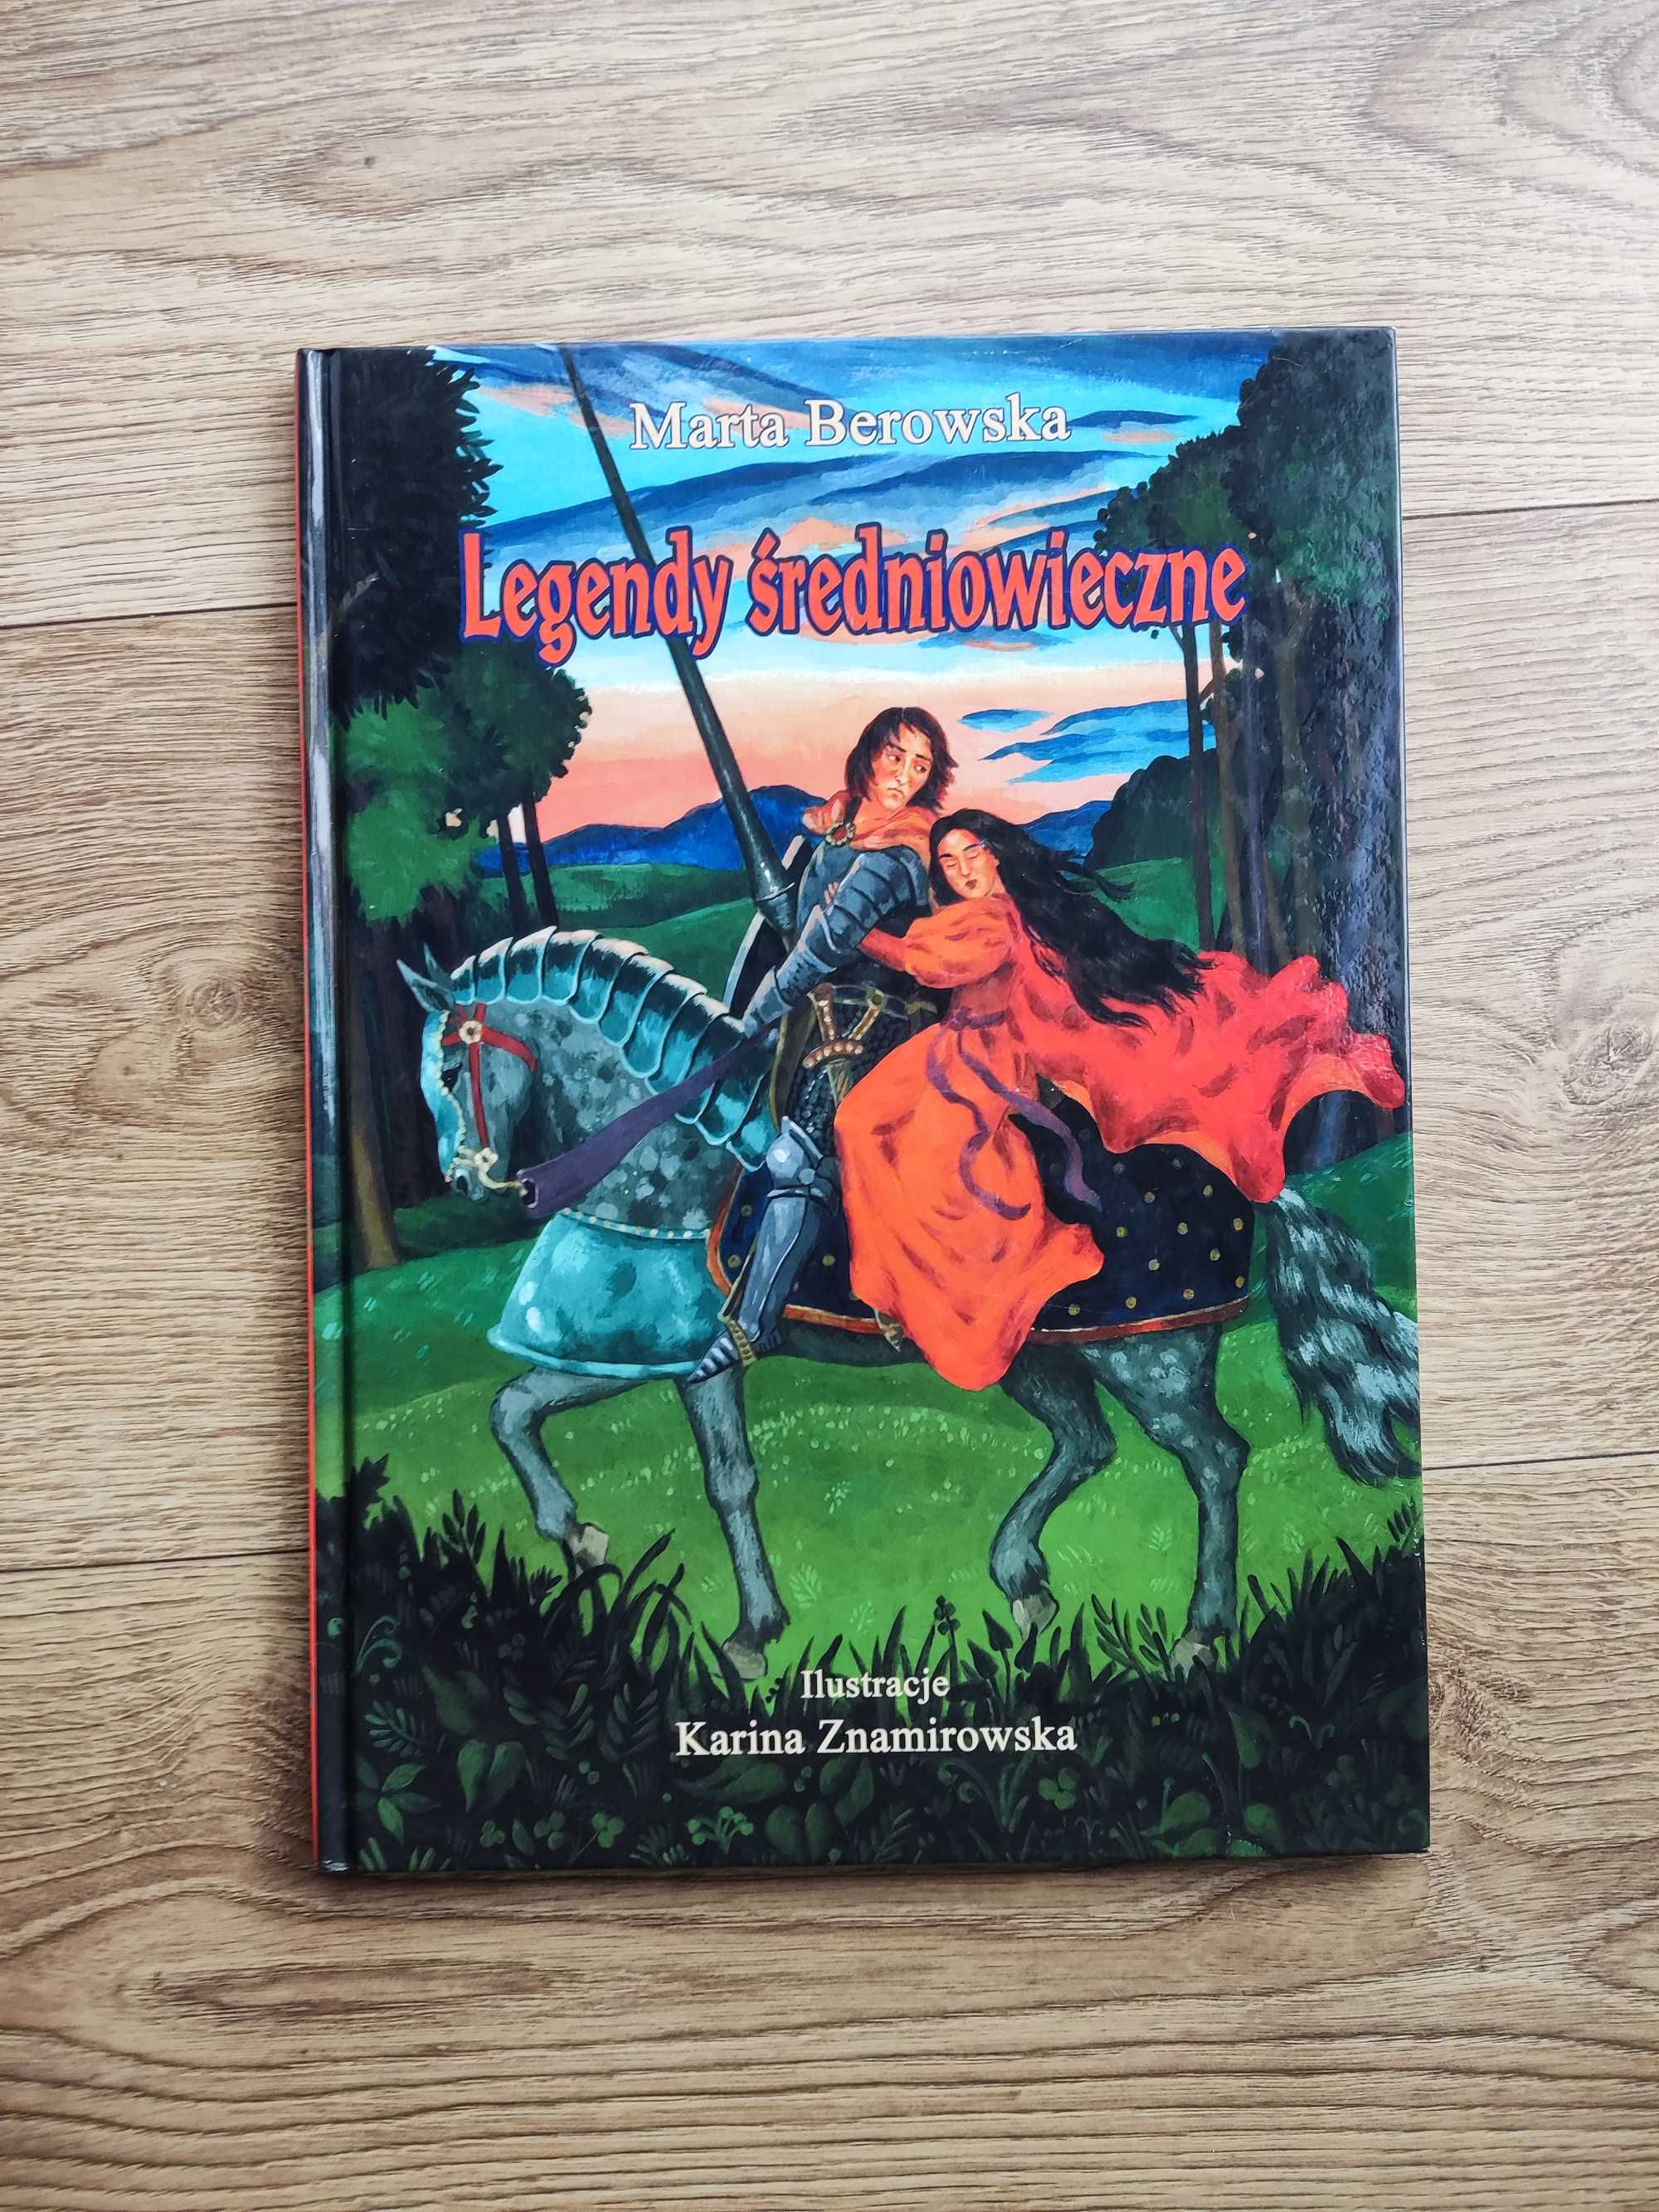 Sprzedam książkę: Legendy średniowieczne - piękne wydanie i ilustracje